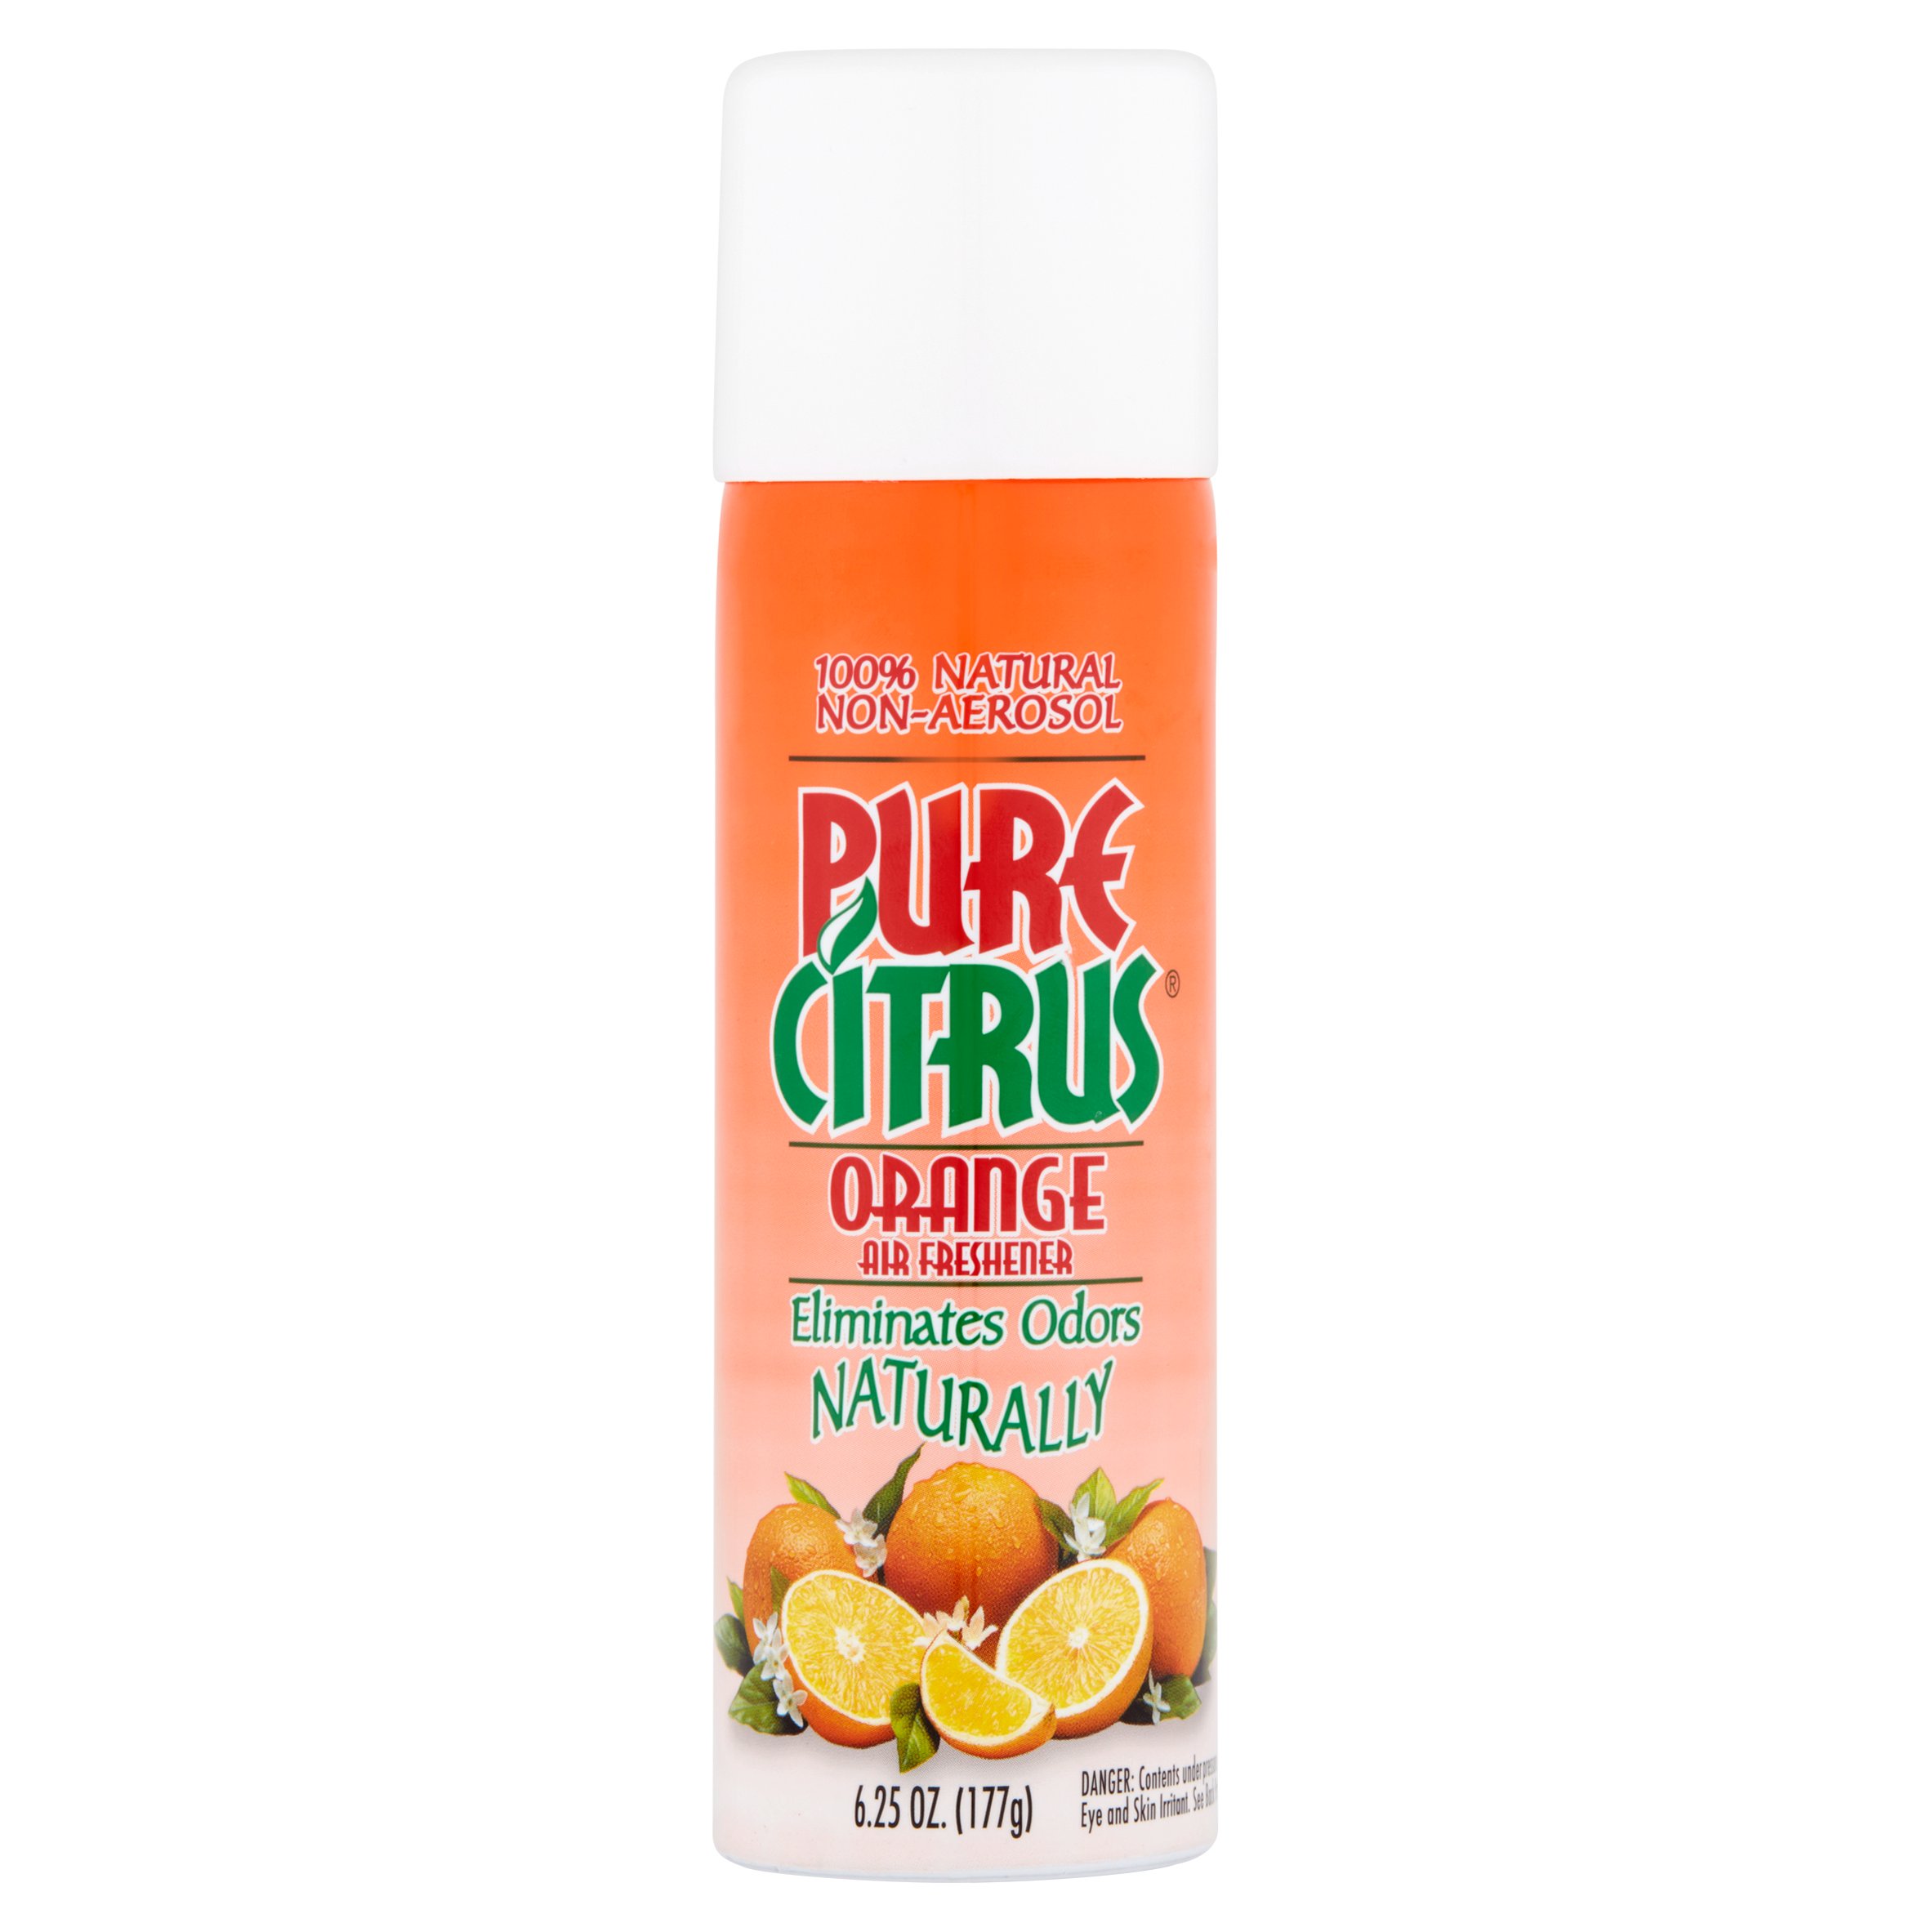 Pure Citrus Orange Air Freshener, 6.25 oz - image 1 of 5